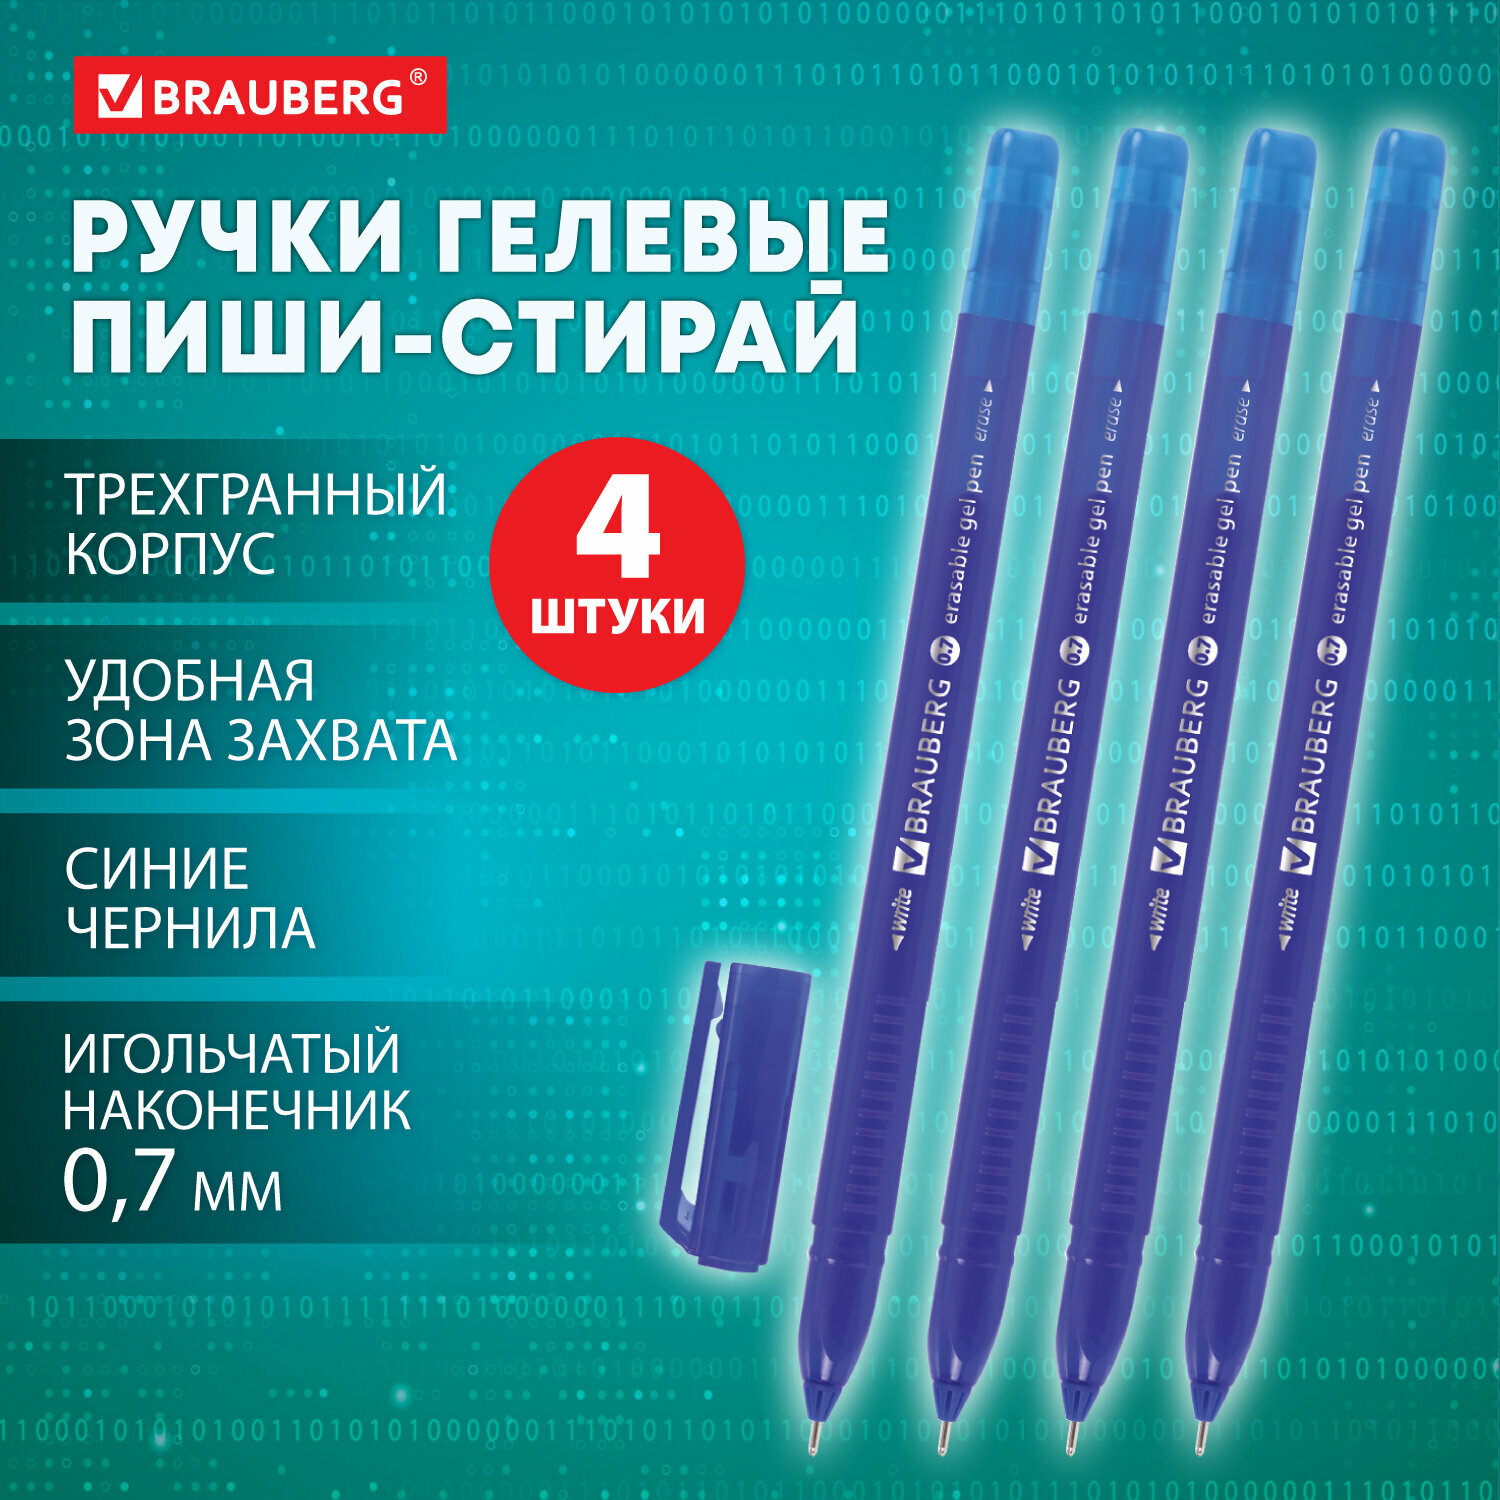 Ручки пиши стирай набор 4 штуки гелевые синие, линия 0,35 мм, стираемые трехгранные, Brauberg Delta, 881000